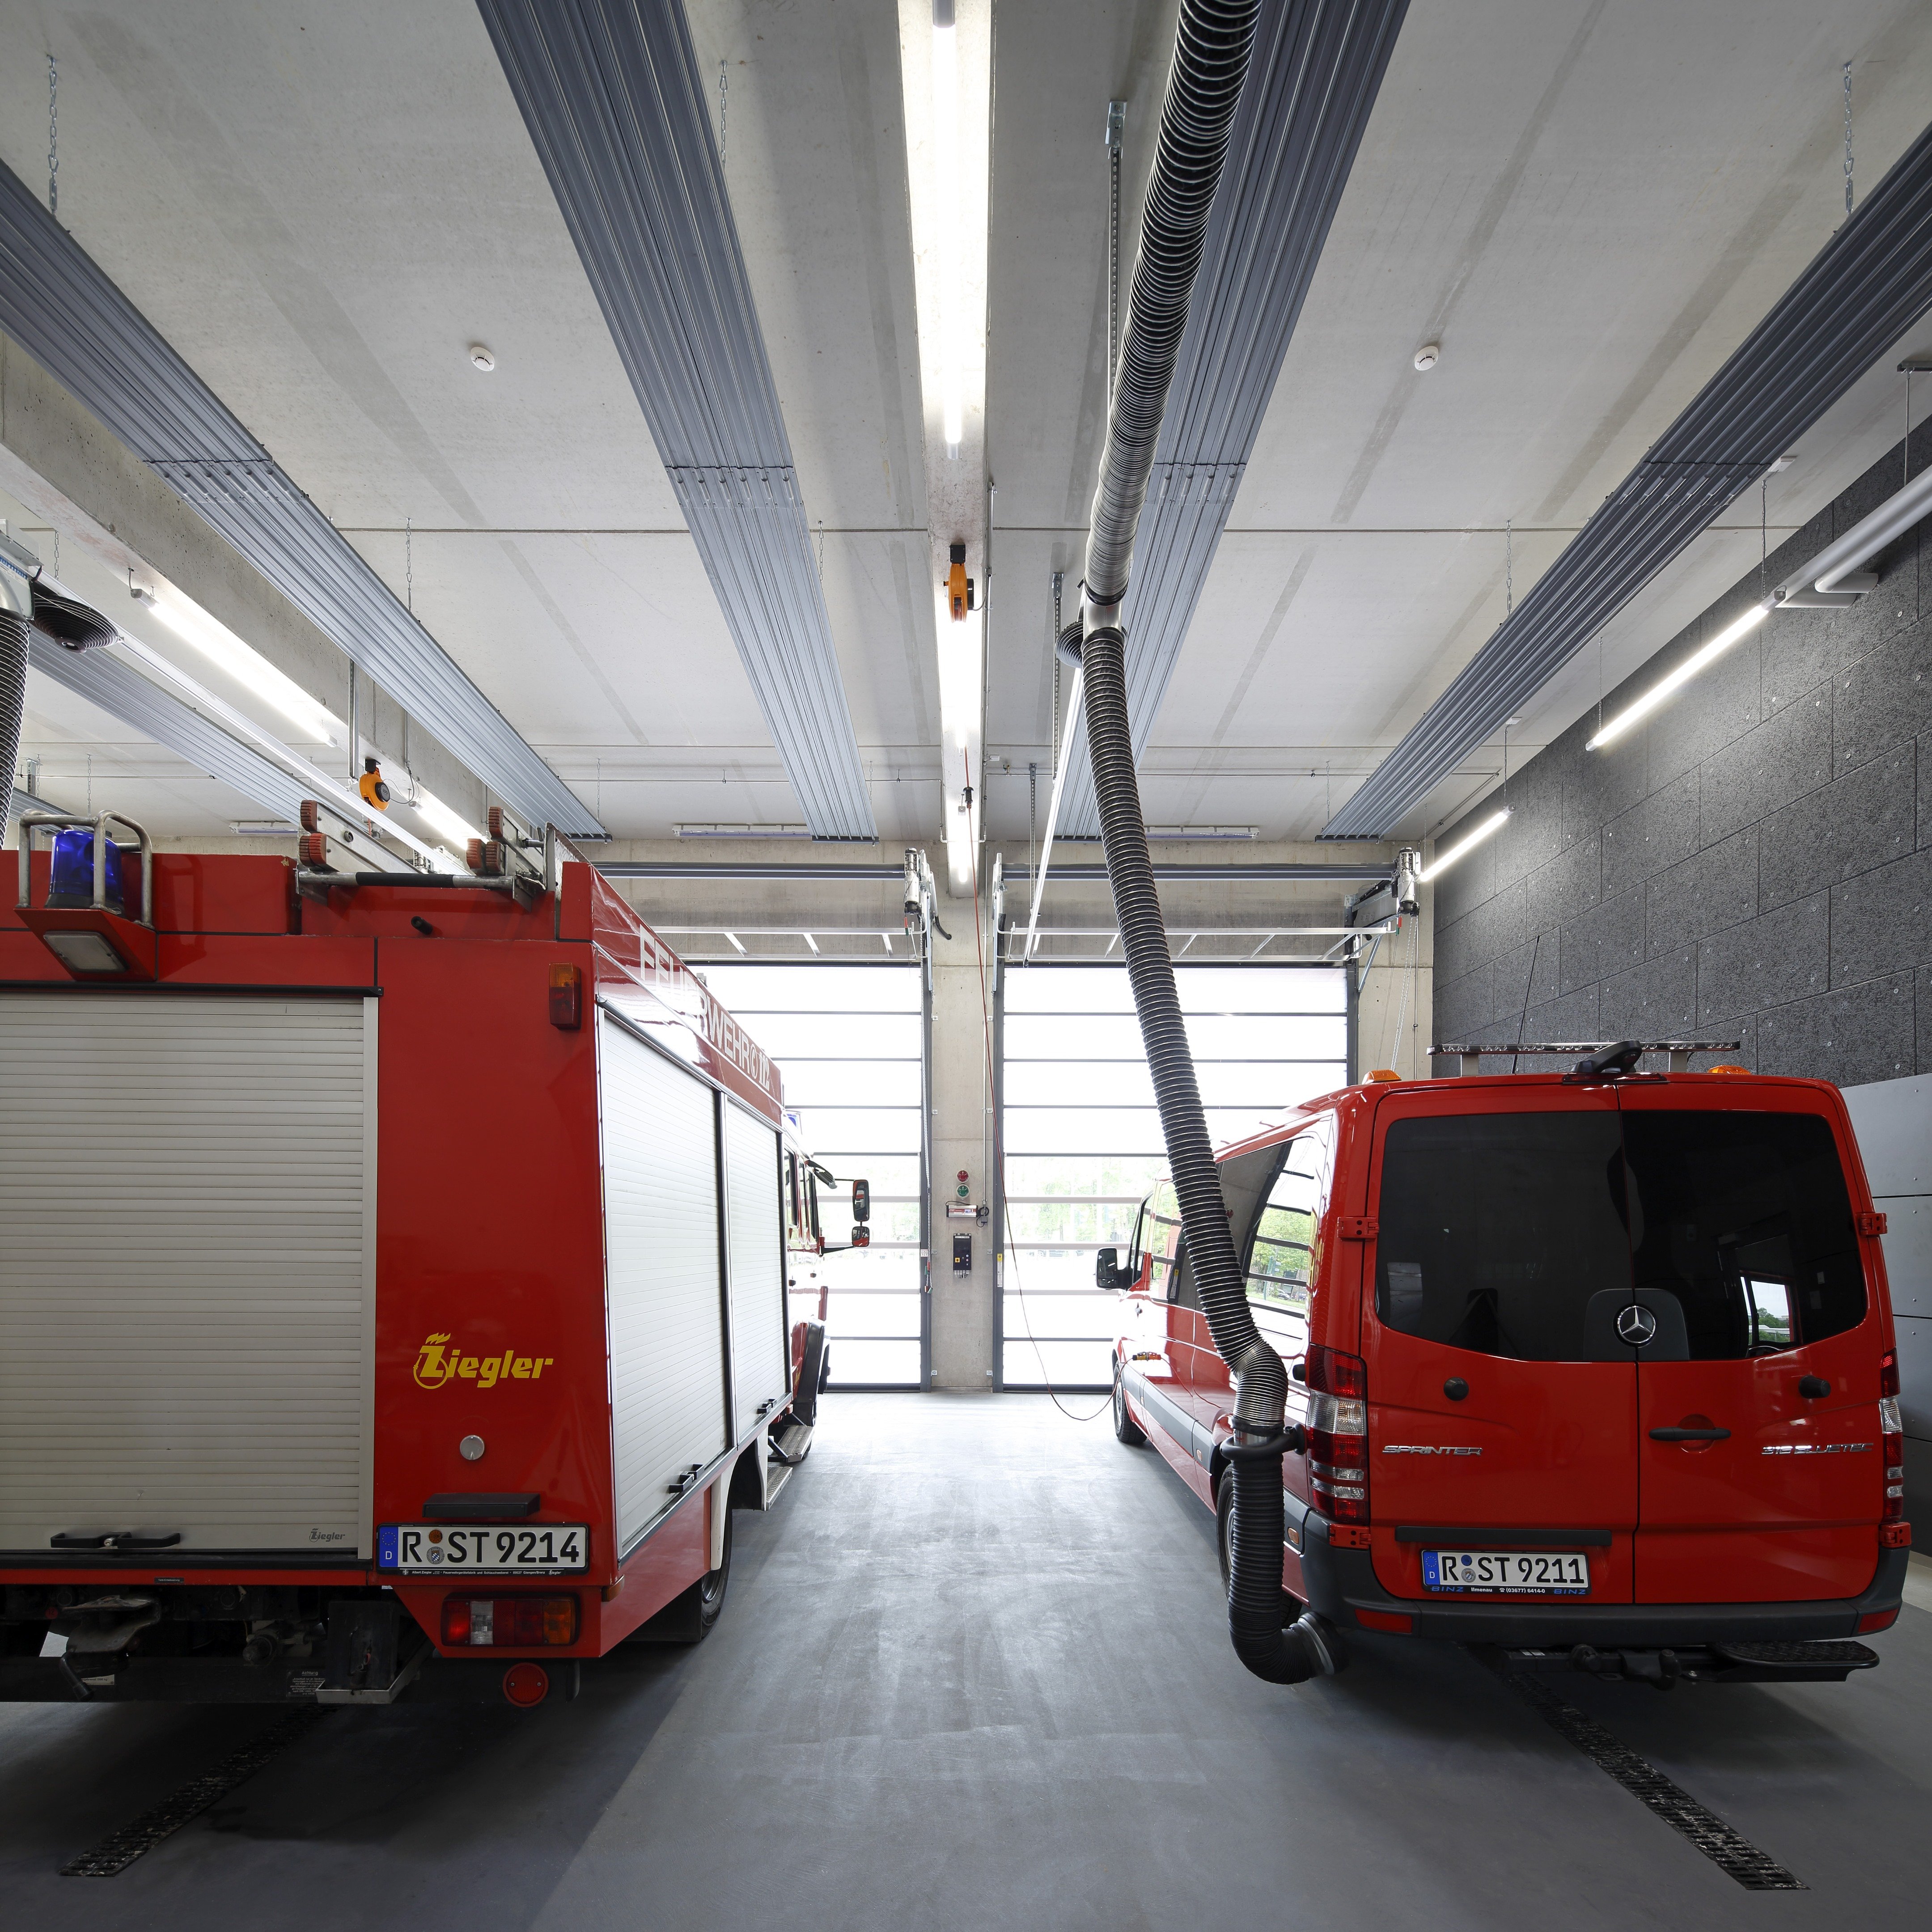 Fire station- Nueva estación de bomberos- Nuovi vigili del fuoco- Ny brandkår- Neubau Feuerwehr, HochBauAmt Regensburg Germany-41